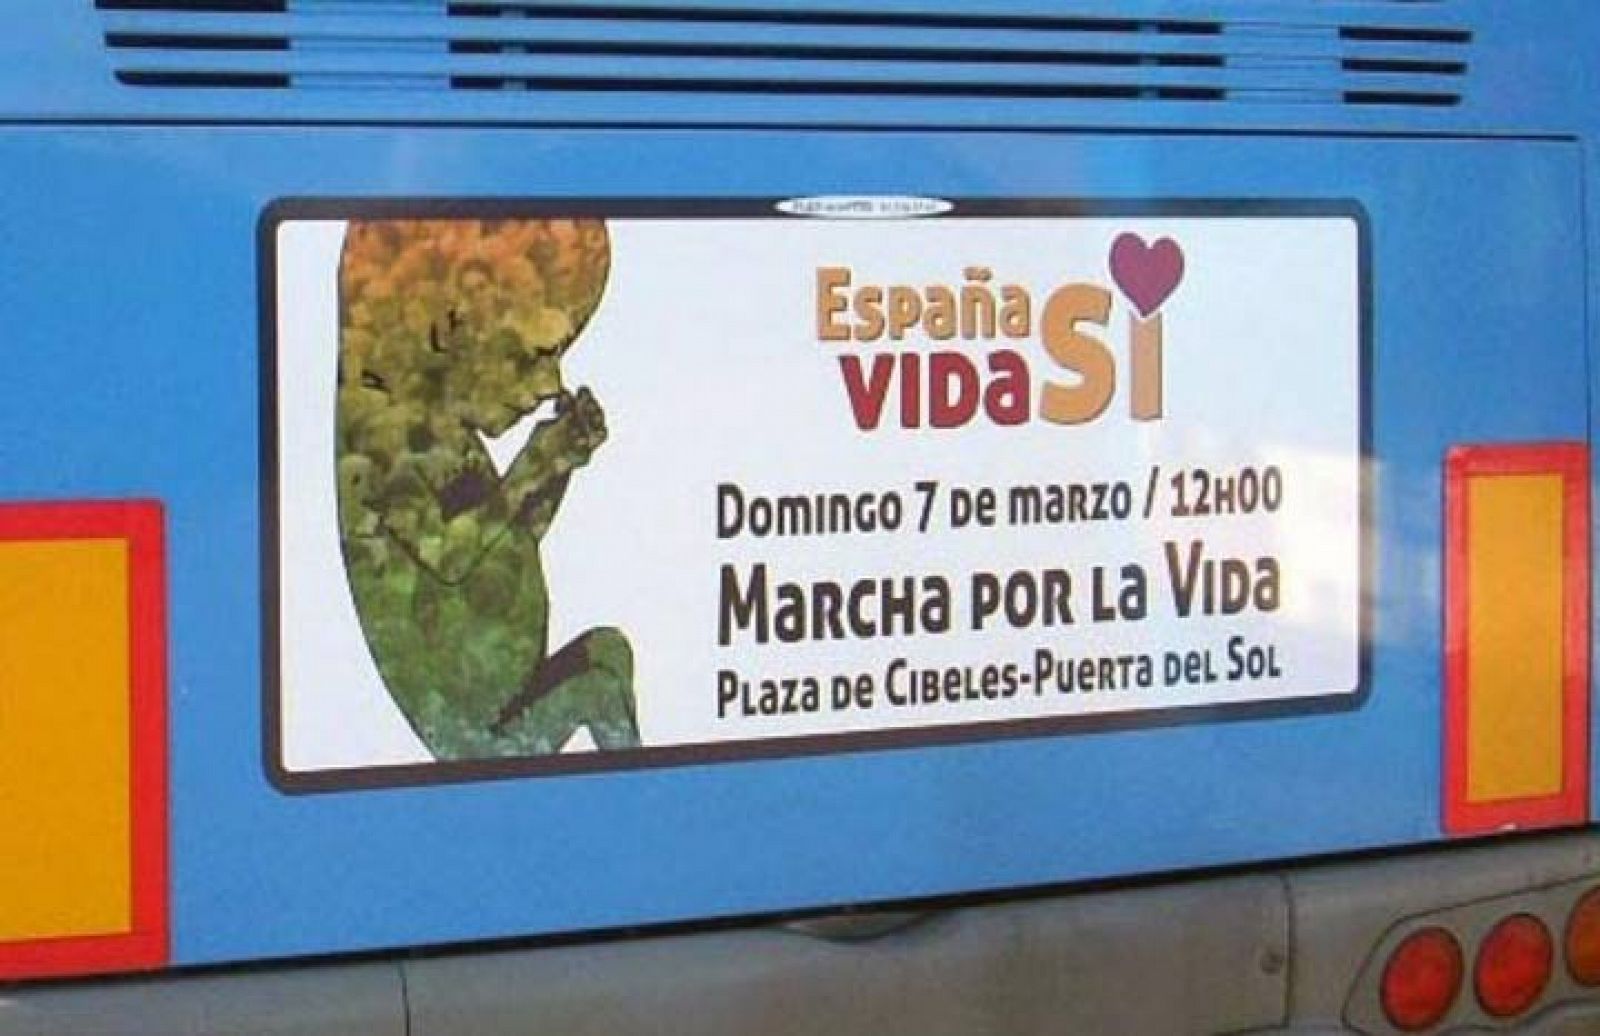 Autobus que circulará por las calles de Madrid anunciando la Marcha por la Vida.